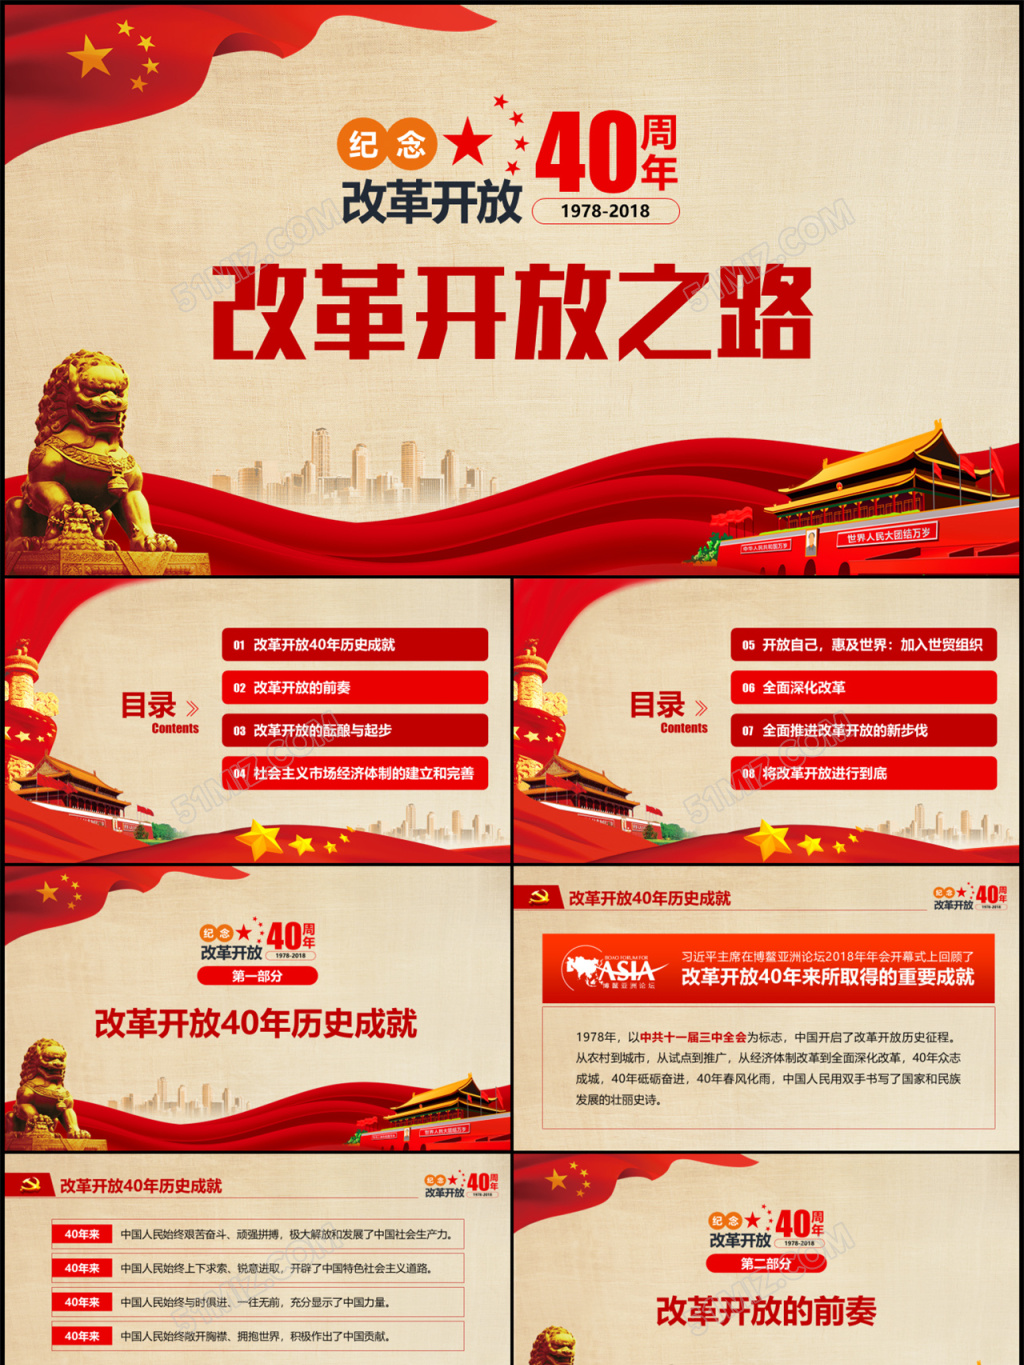 深圳改革开放四十年系列报道-新闻频道-和讯网